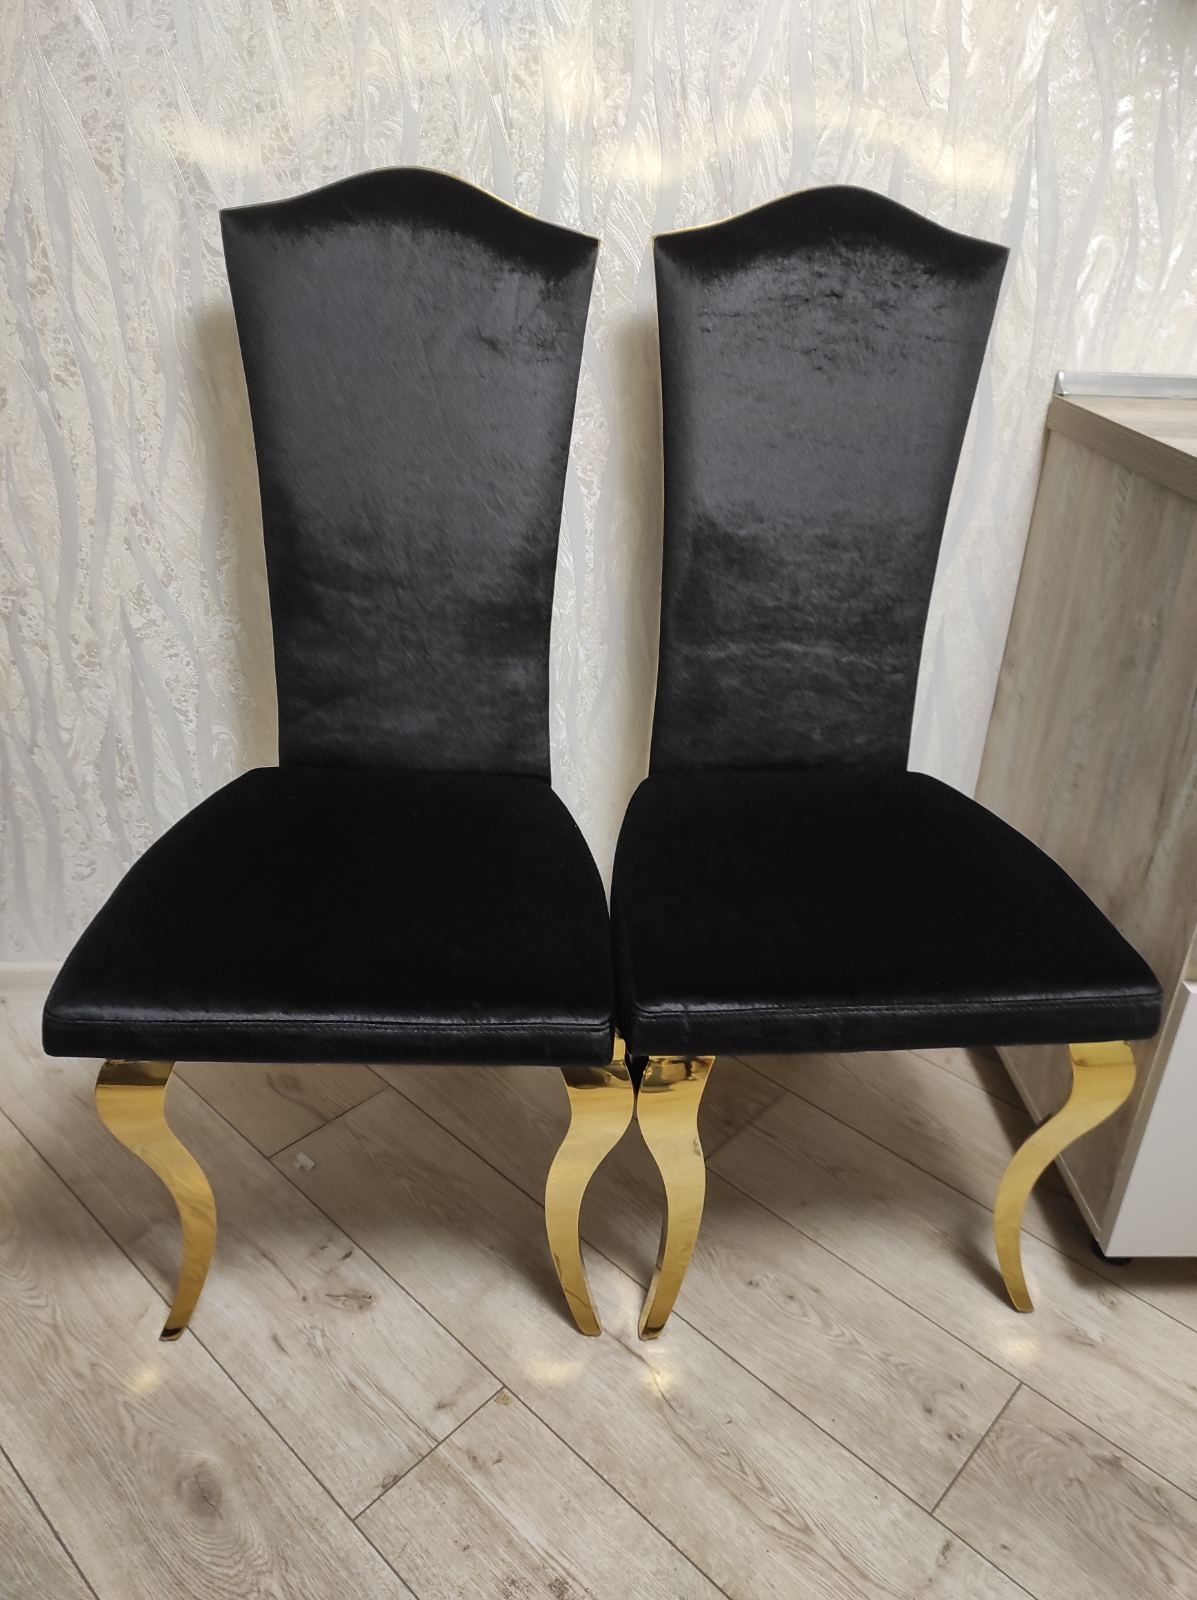 Продам стильные, эксклюзивные и элитные стулья. Производство Польши.